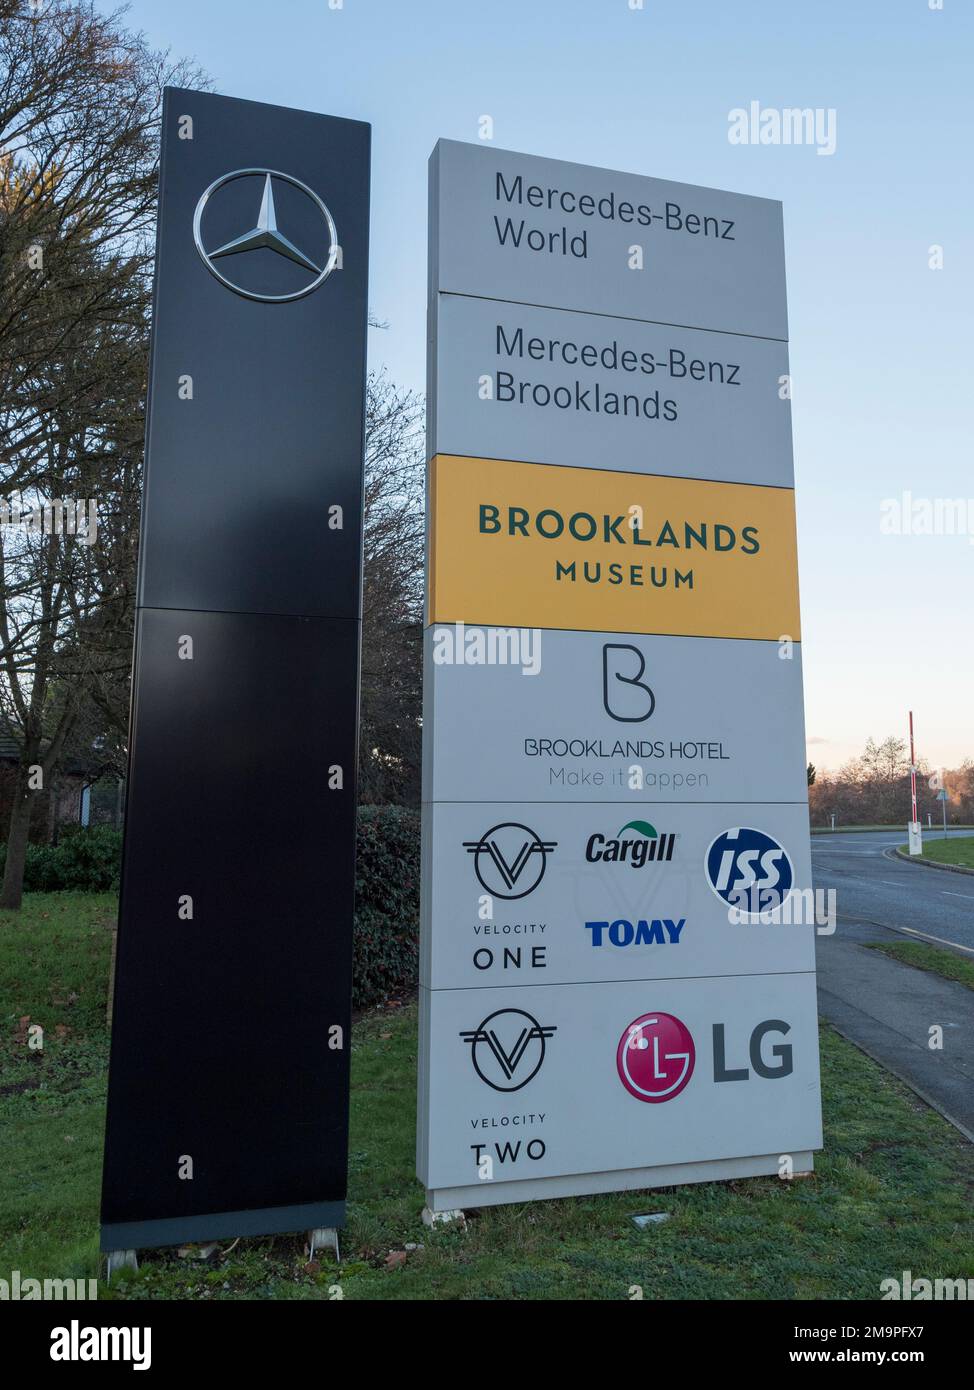 Panneau d'entrée le site qui inclut le musée Brooklands, le musée de bus de Londres et Mercedes-Benz Brooklands, Woking, Surrey, Royaume-Uni. Banque D'Images